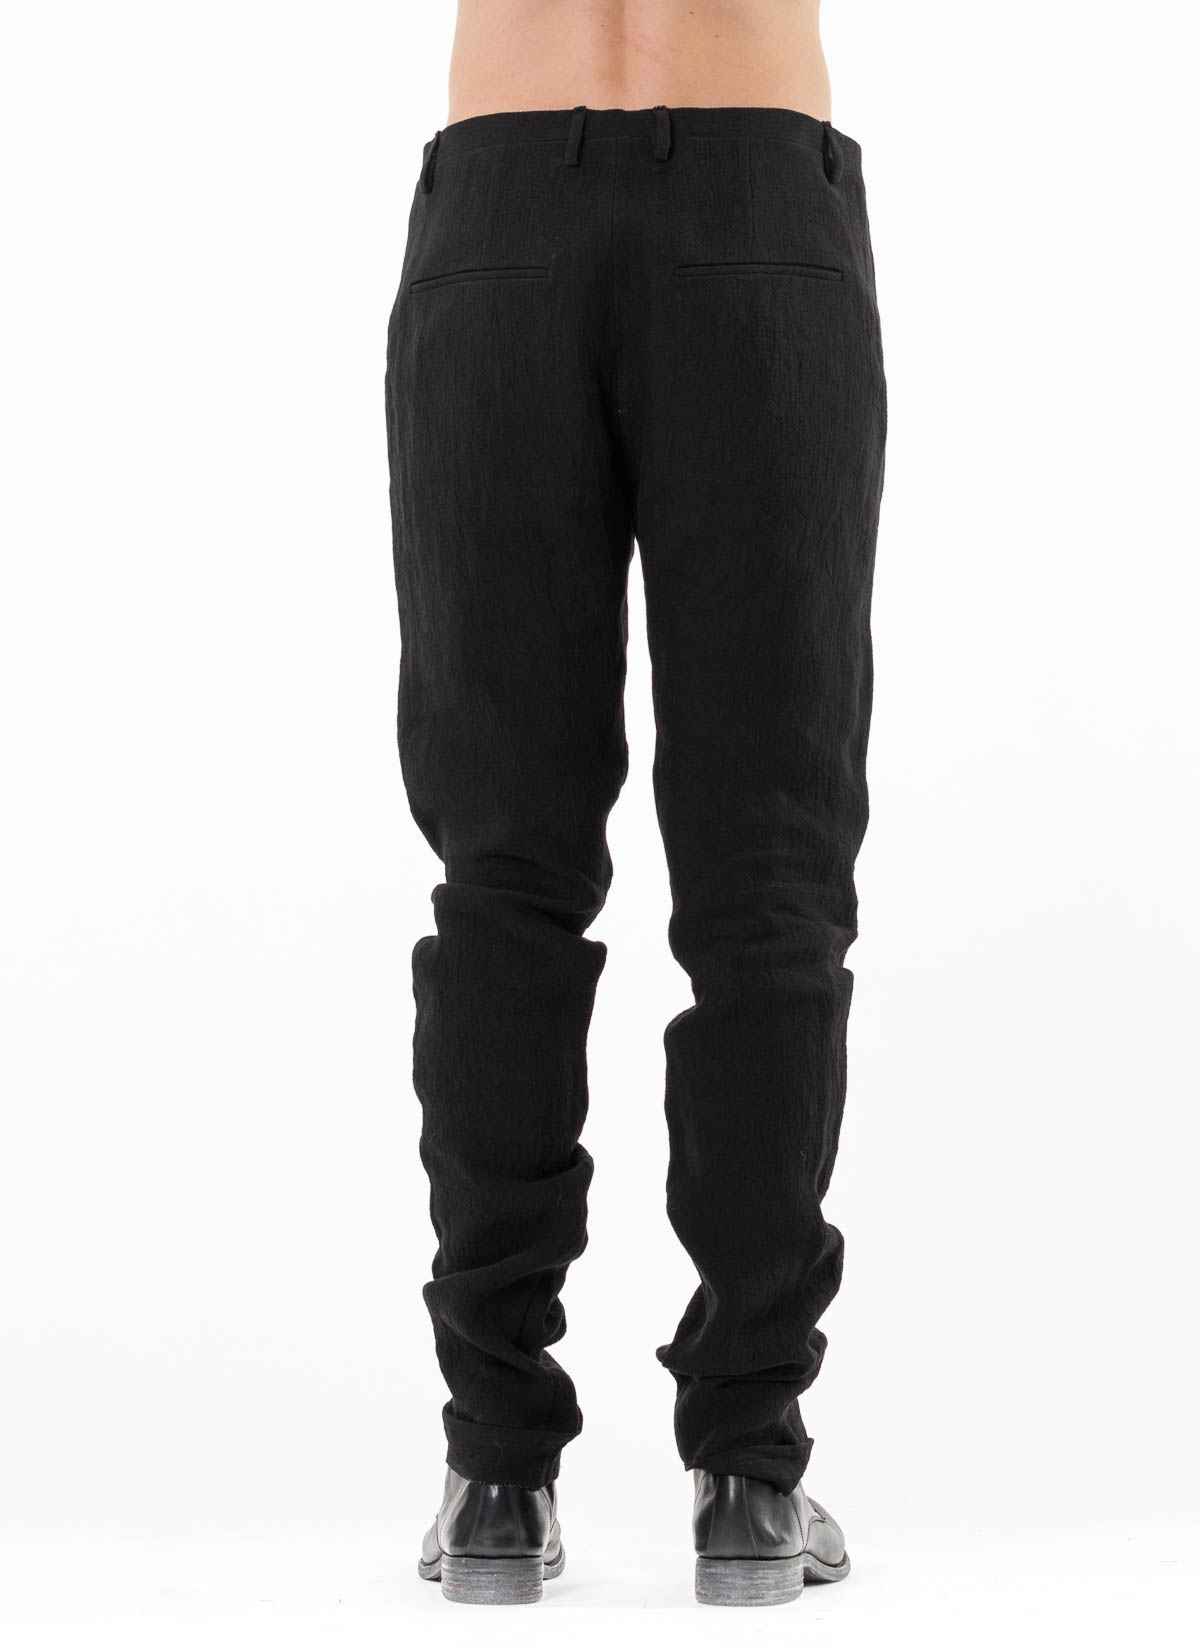 hide-m | Label Under Construction One Cut Pants, black linen